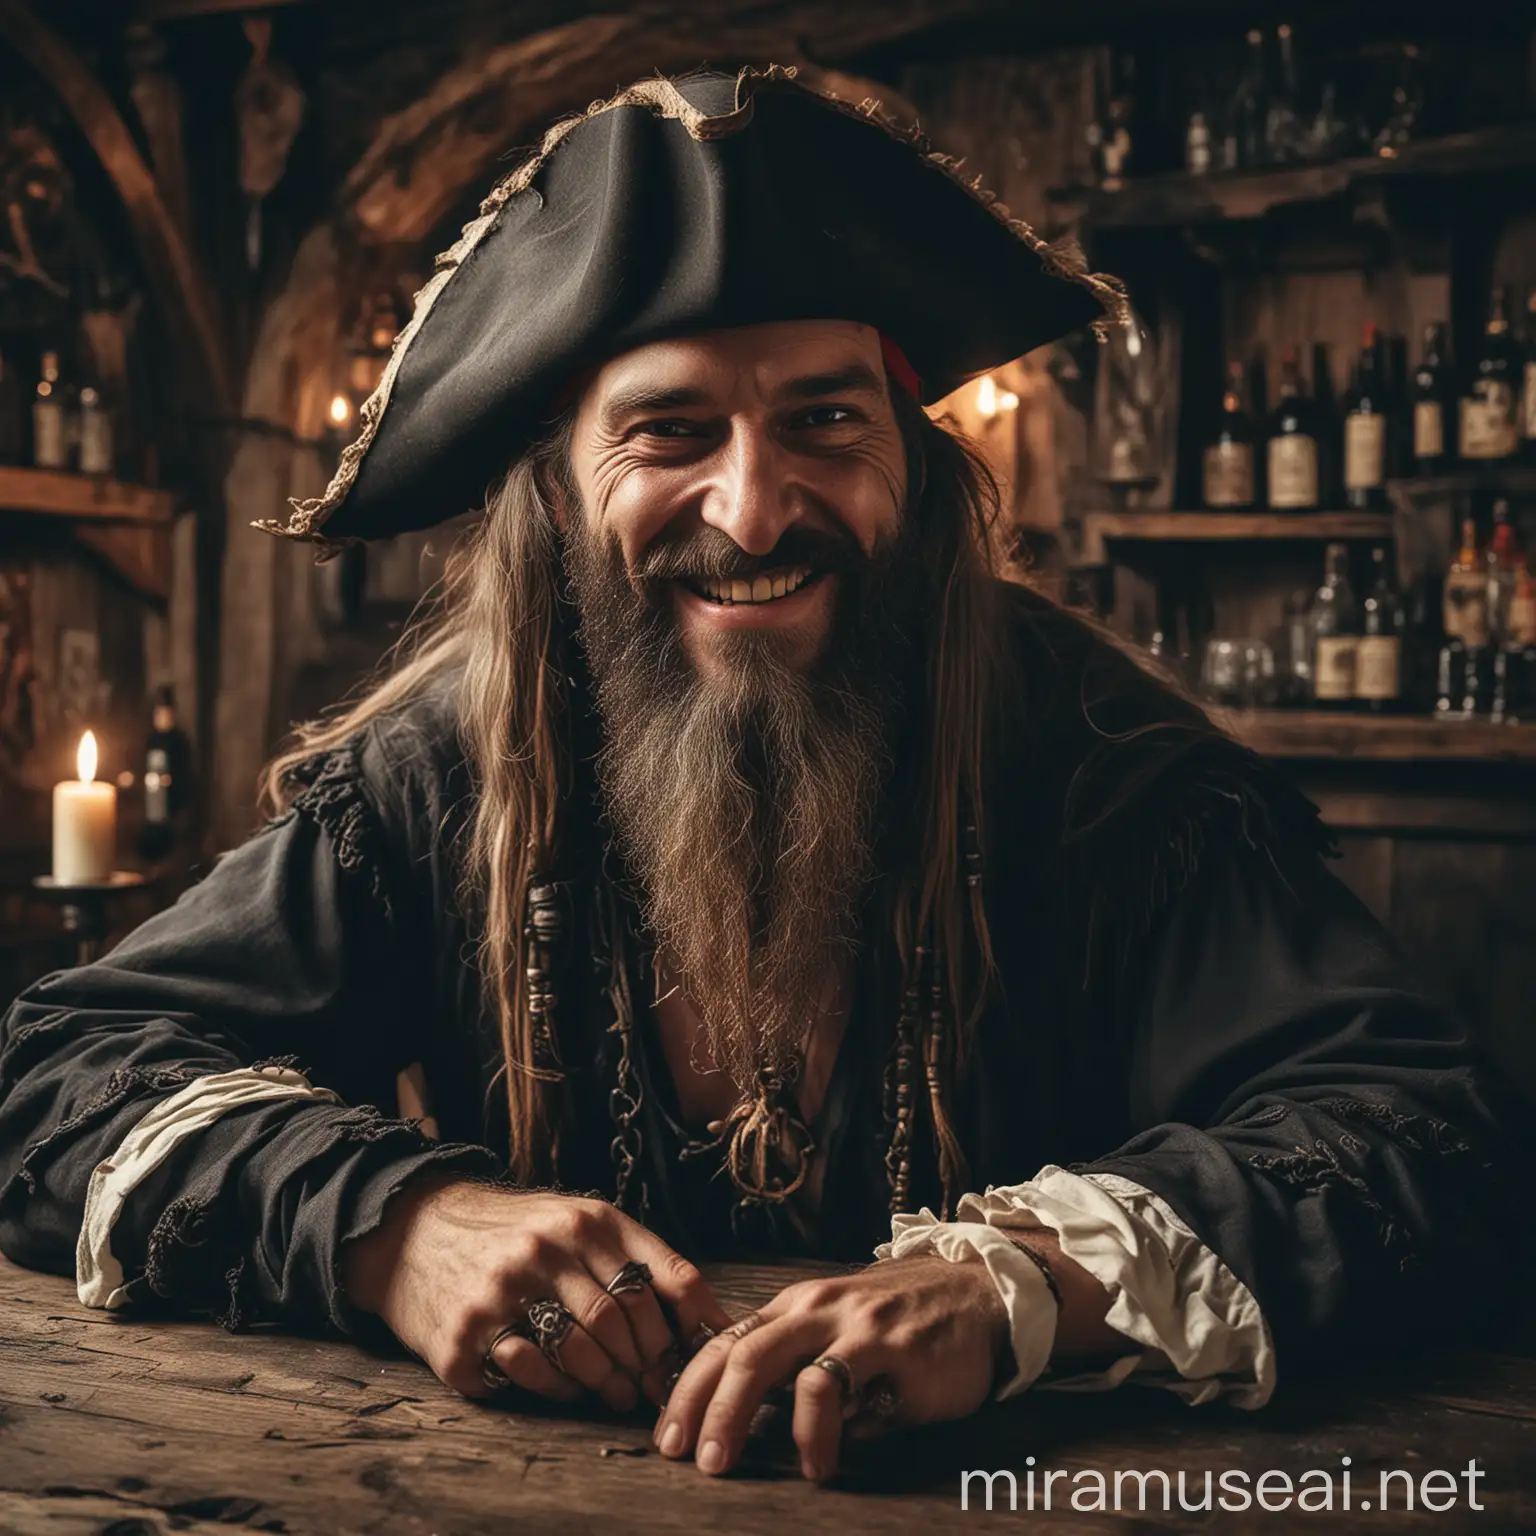 Ein Pirat mit fröhlichem Gesicht und langem Bart sitzt zusammen mit dem Sensenmann am Tresen einer mittelalterlichen Taverne und trinkt Wein und Rum